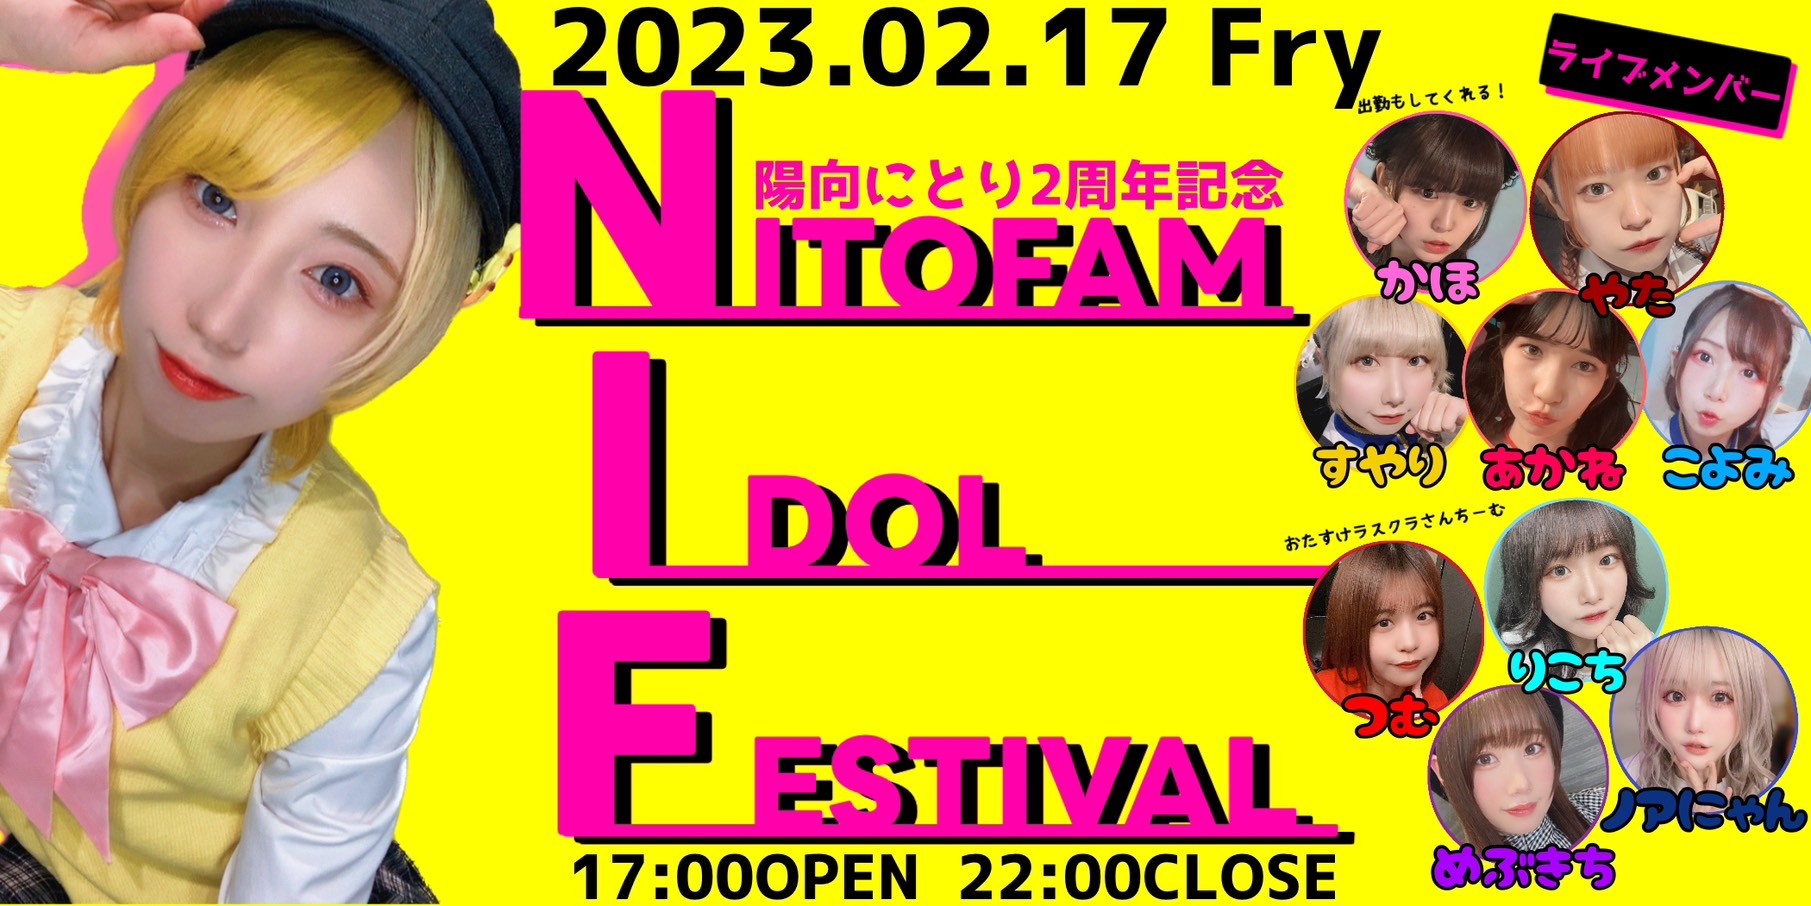 陽向にとり2周年記念イベント Nitofam Idol Festival